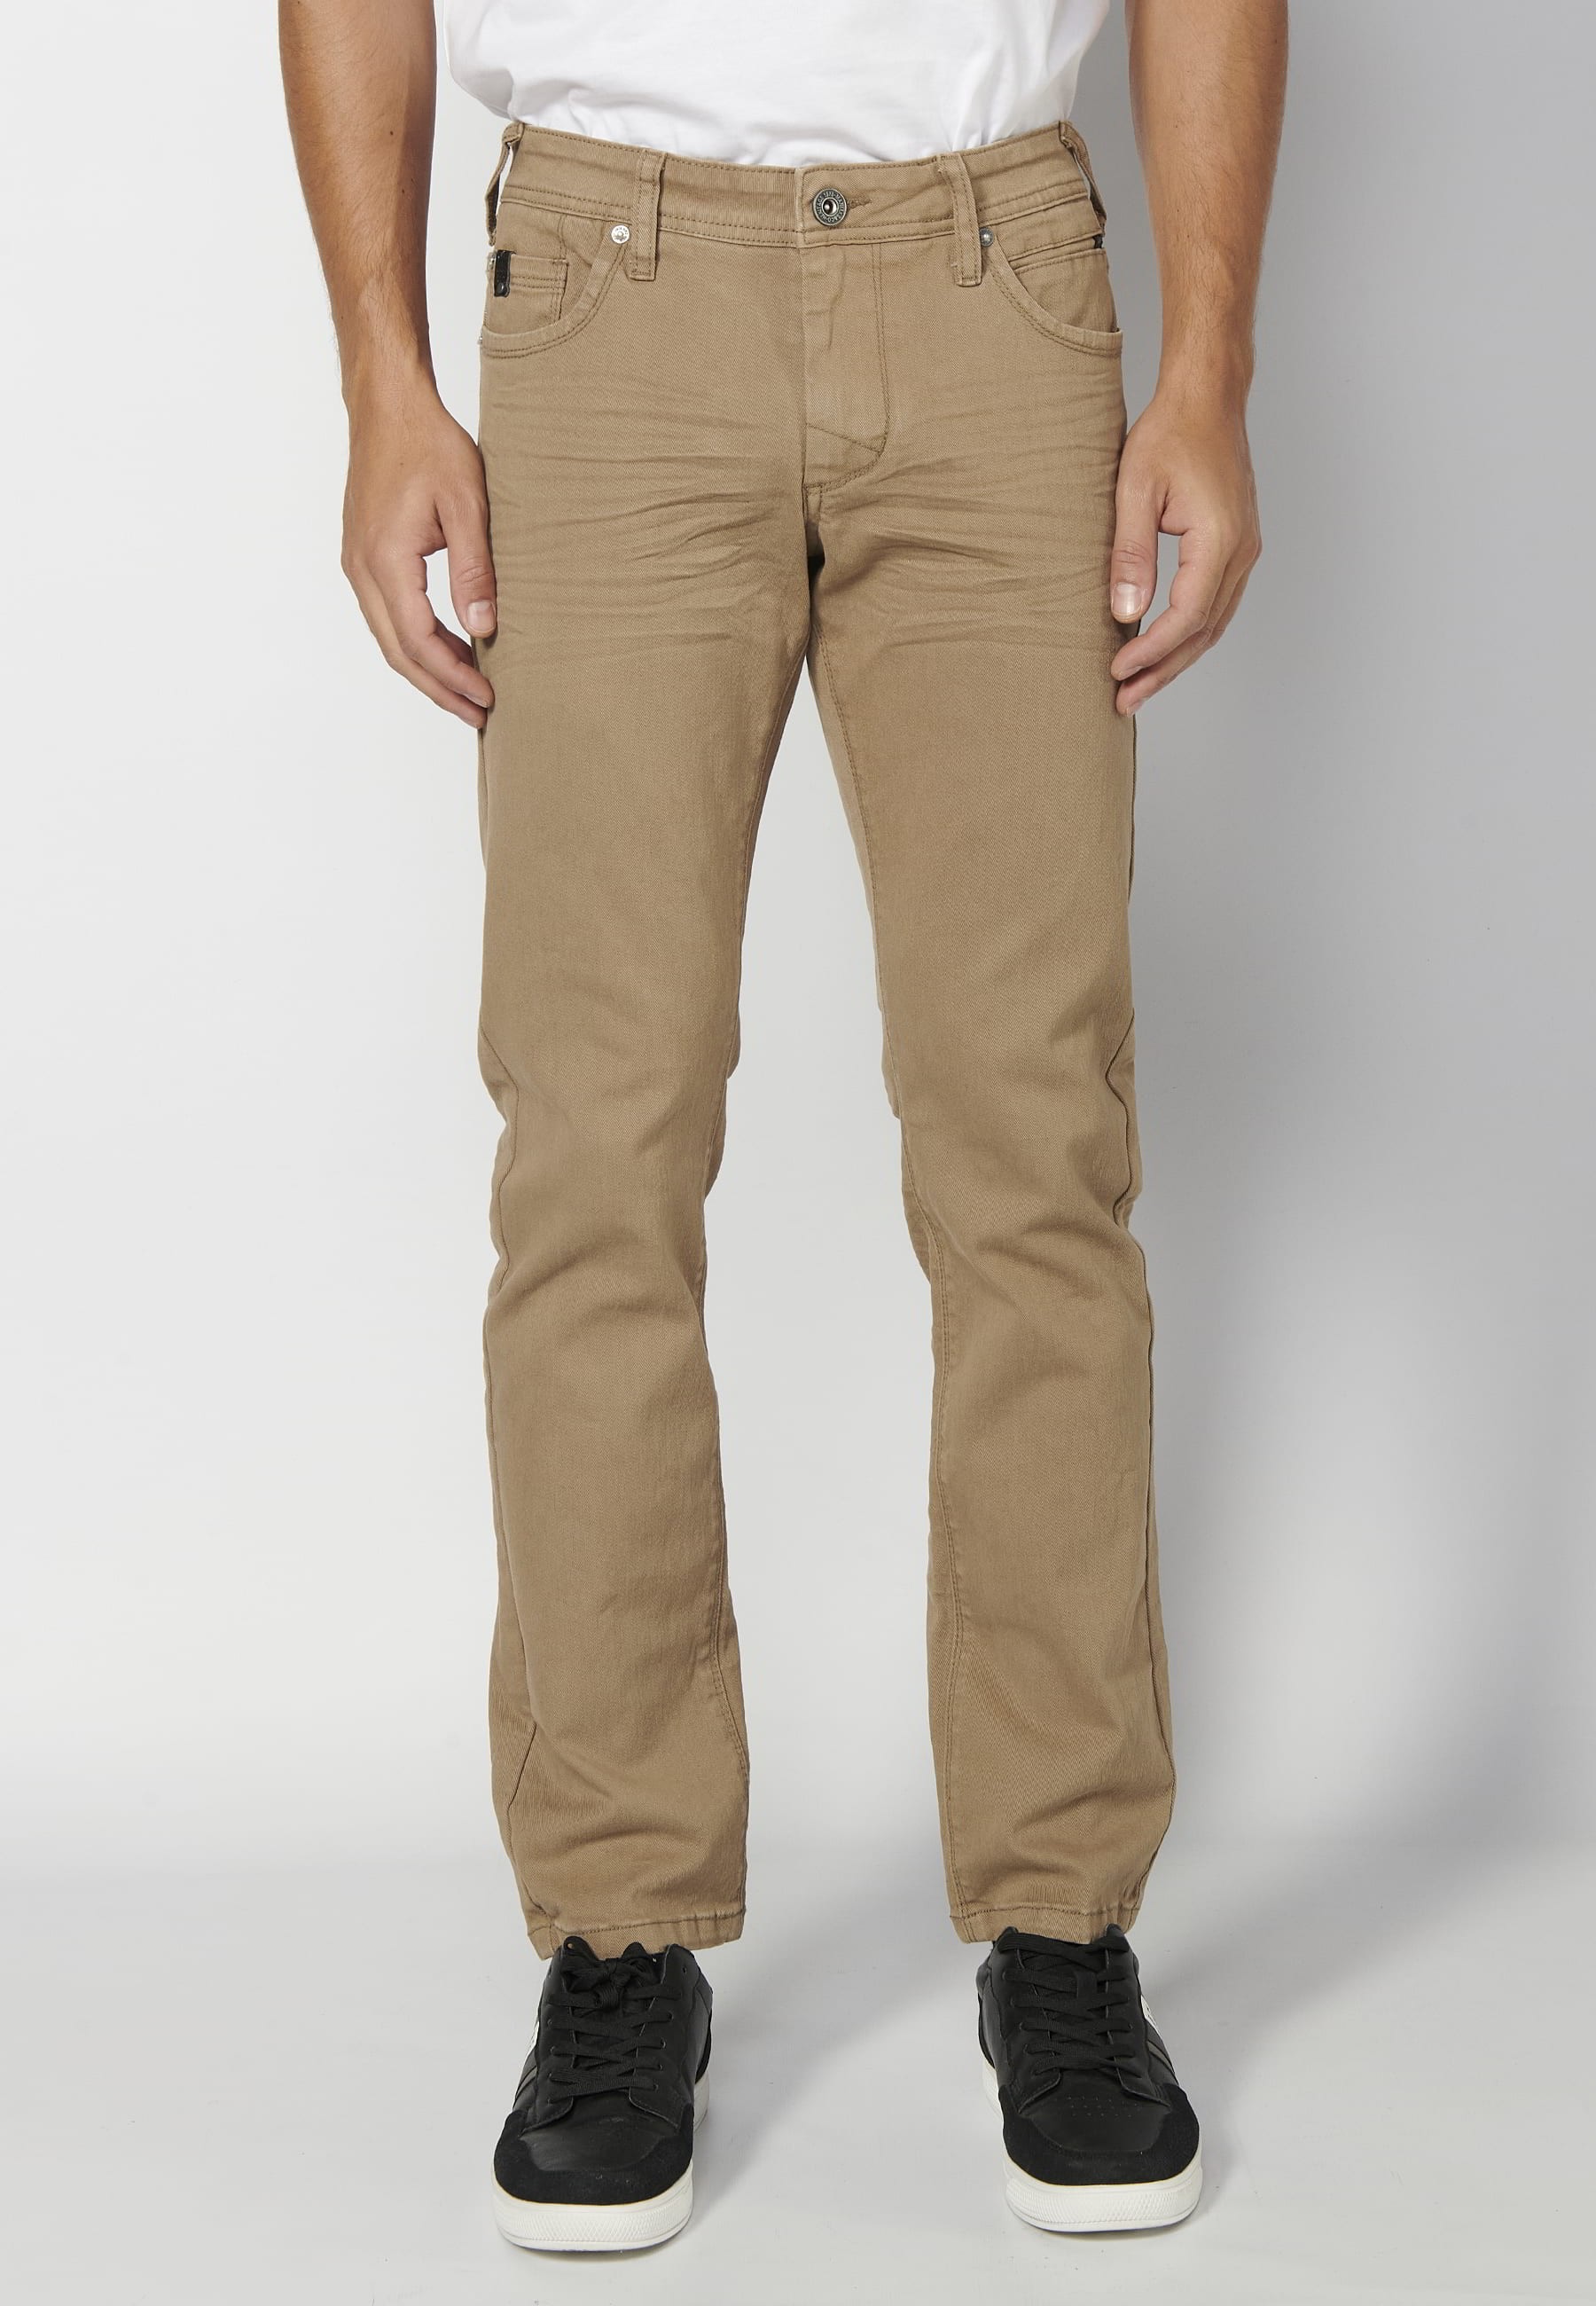 Pantalons llargs strech regular fit, amb cinc butxaques, color Beige, per a Home 4